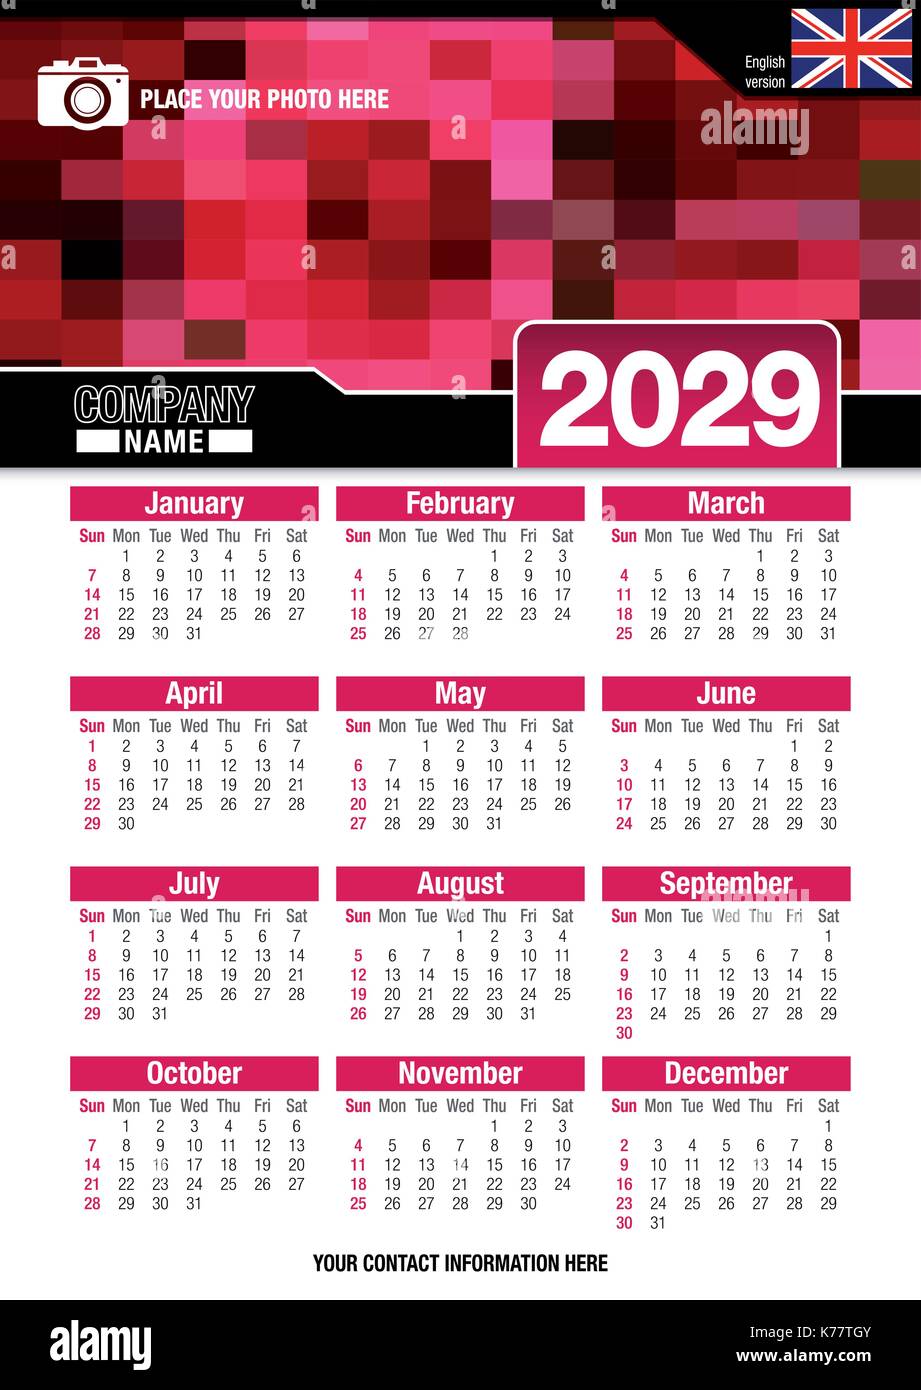 Utile calendario da parete 2029 con design di colori rosso mosaico. Formato A4 verticale. Dimensioni: 210mm x 297mm. Versione Inglese - immagine vettoriale Illustrazione Vettoriale